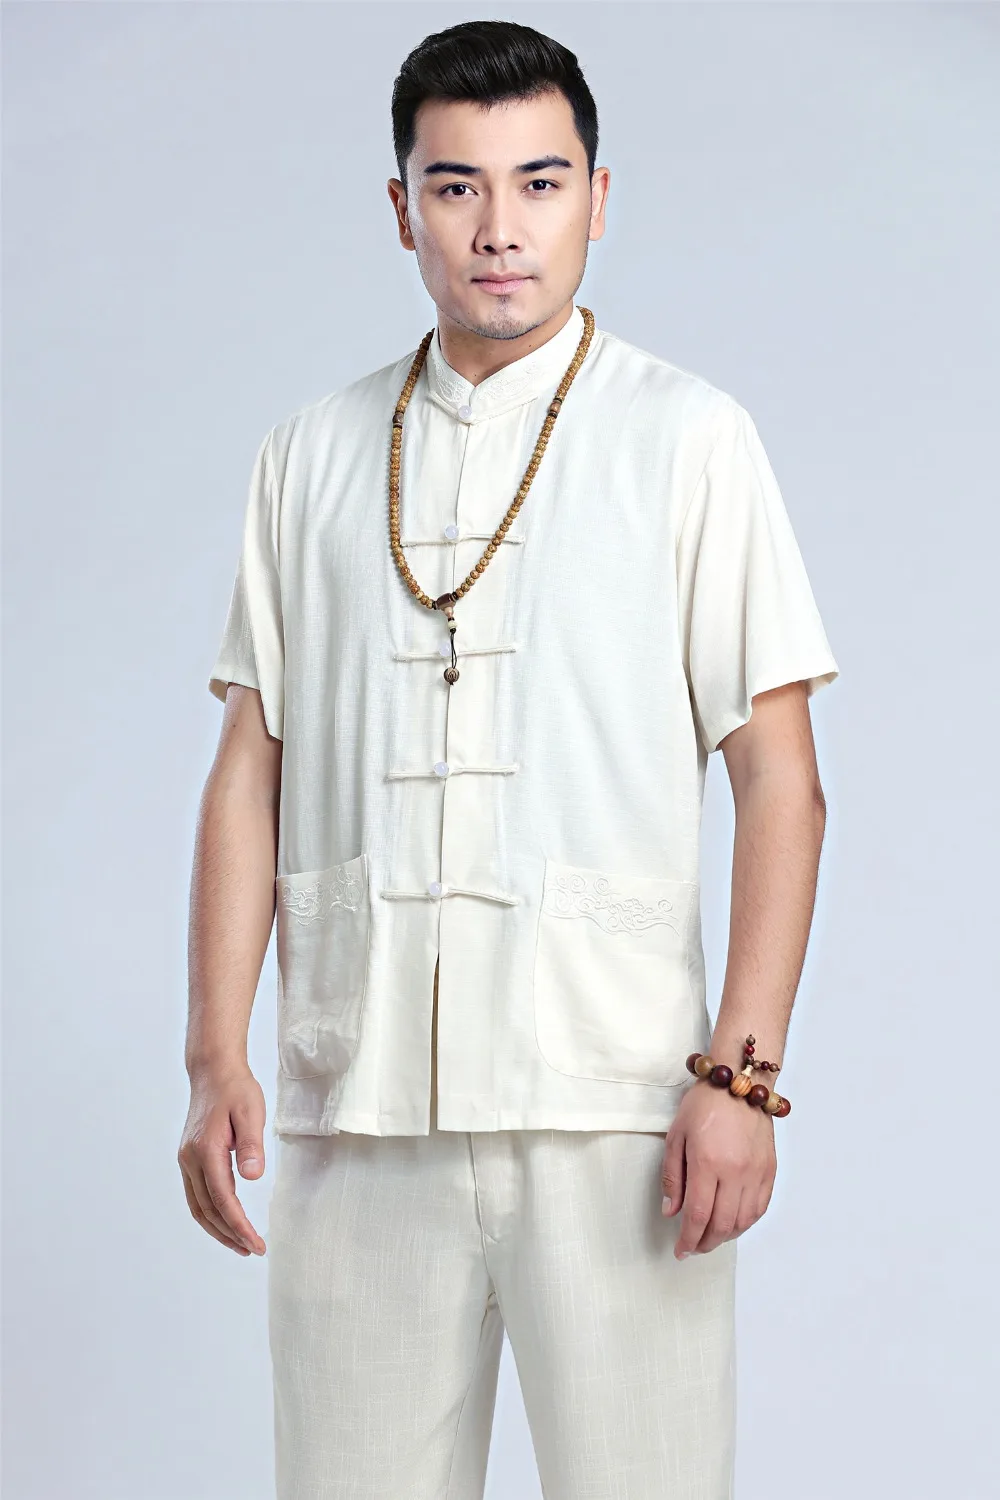 Шанхай история человек топ кунг-фу китайский стиль Топ Кунг Фу рубашка традиционная мужская одежда китайский топ